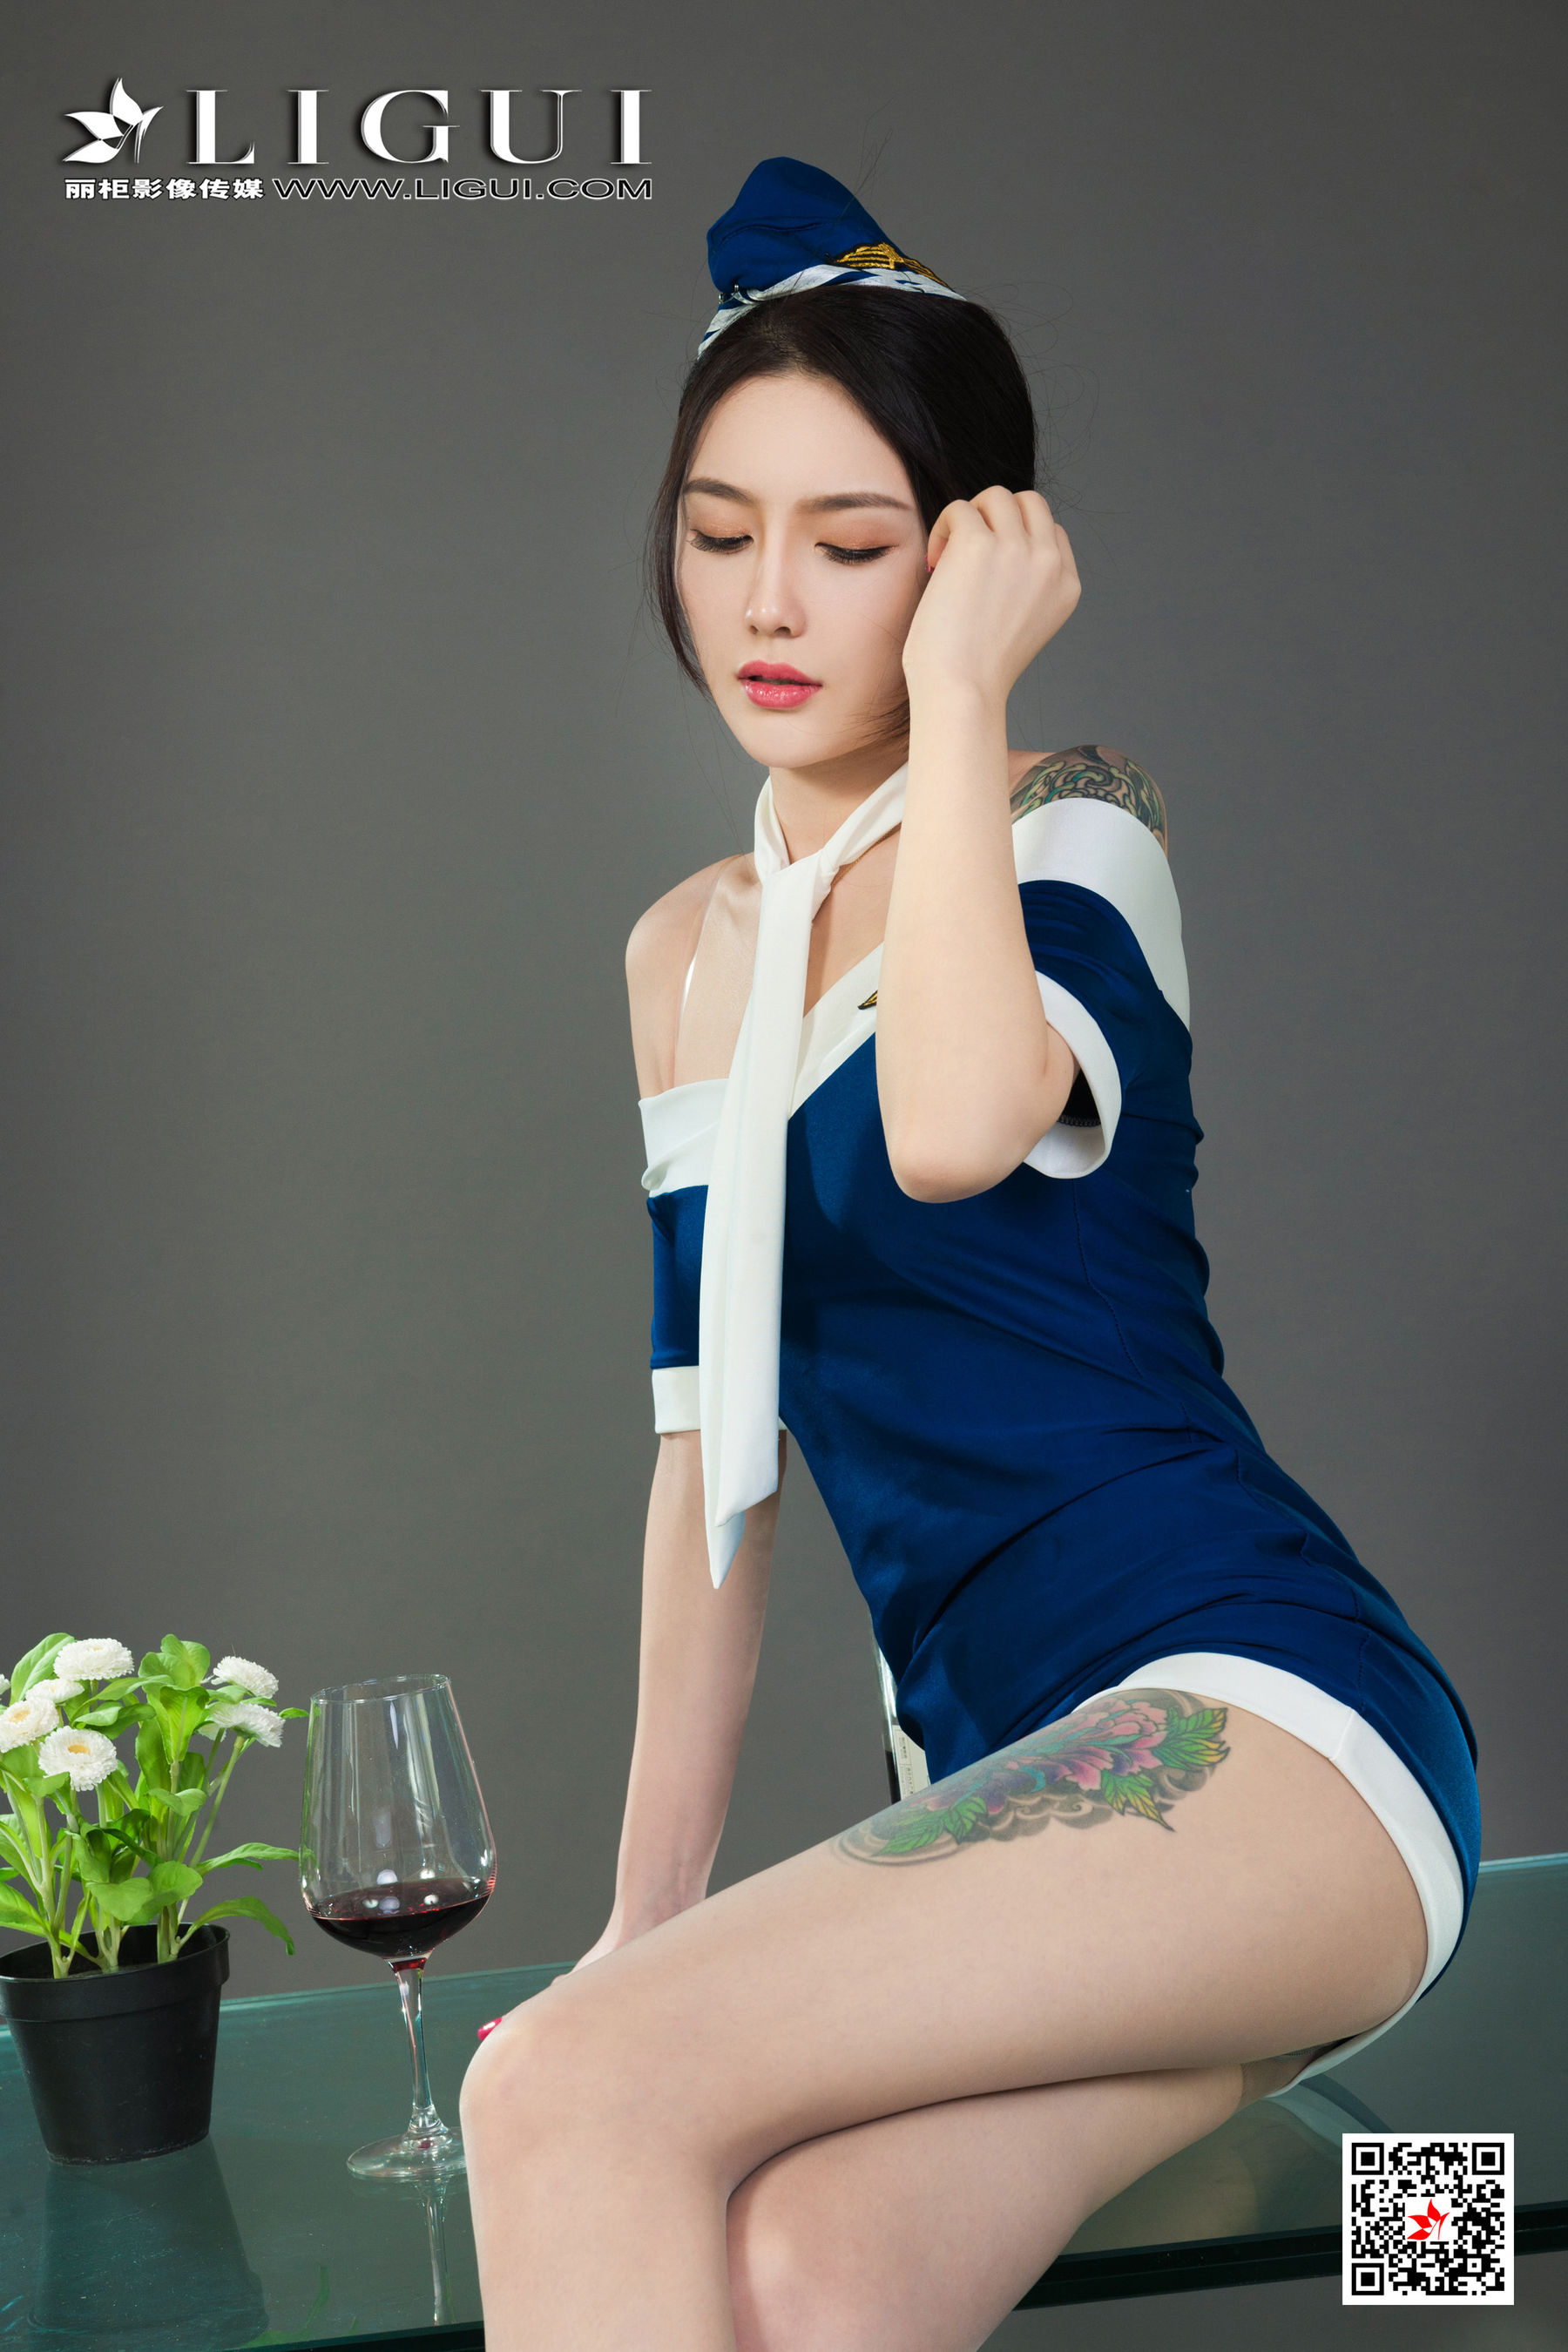 [丽柜Ligui] Model 甜甜 《醉酒香莲》